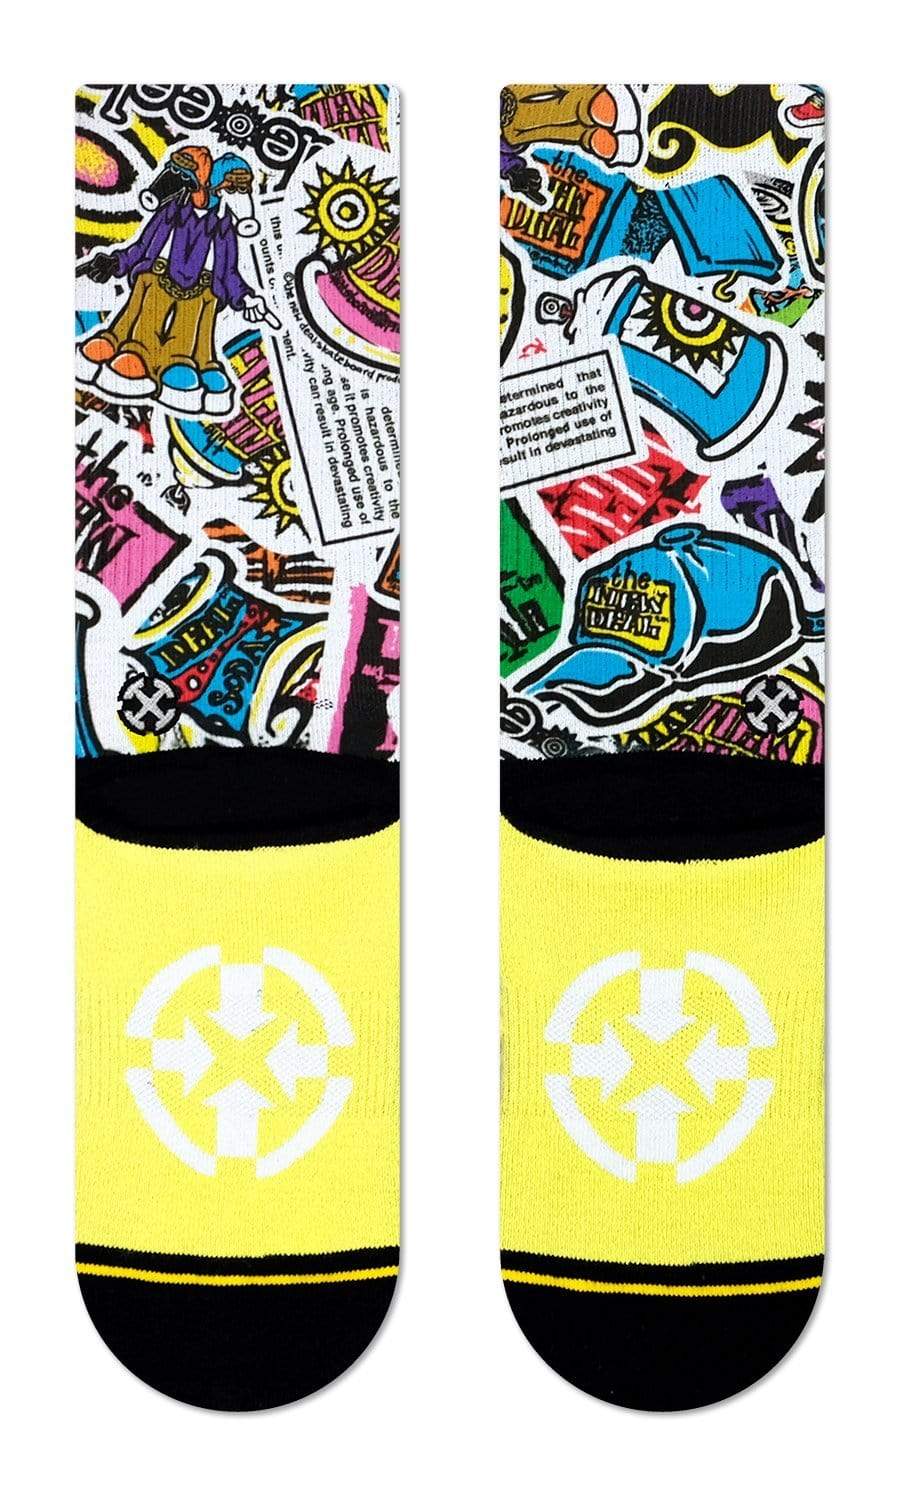 Merge 4 - New Deal Sticker Pack Socks